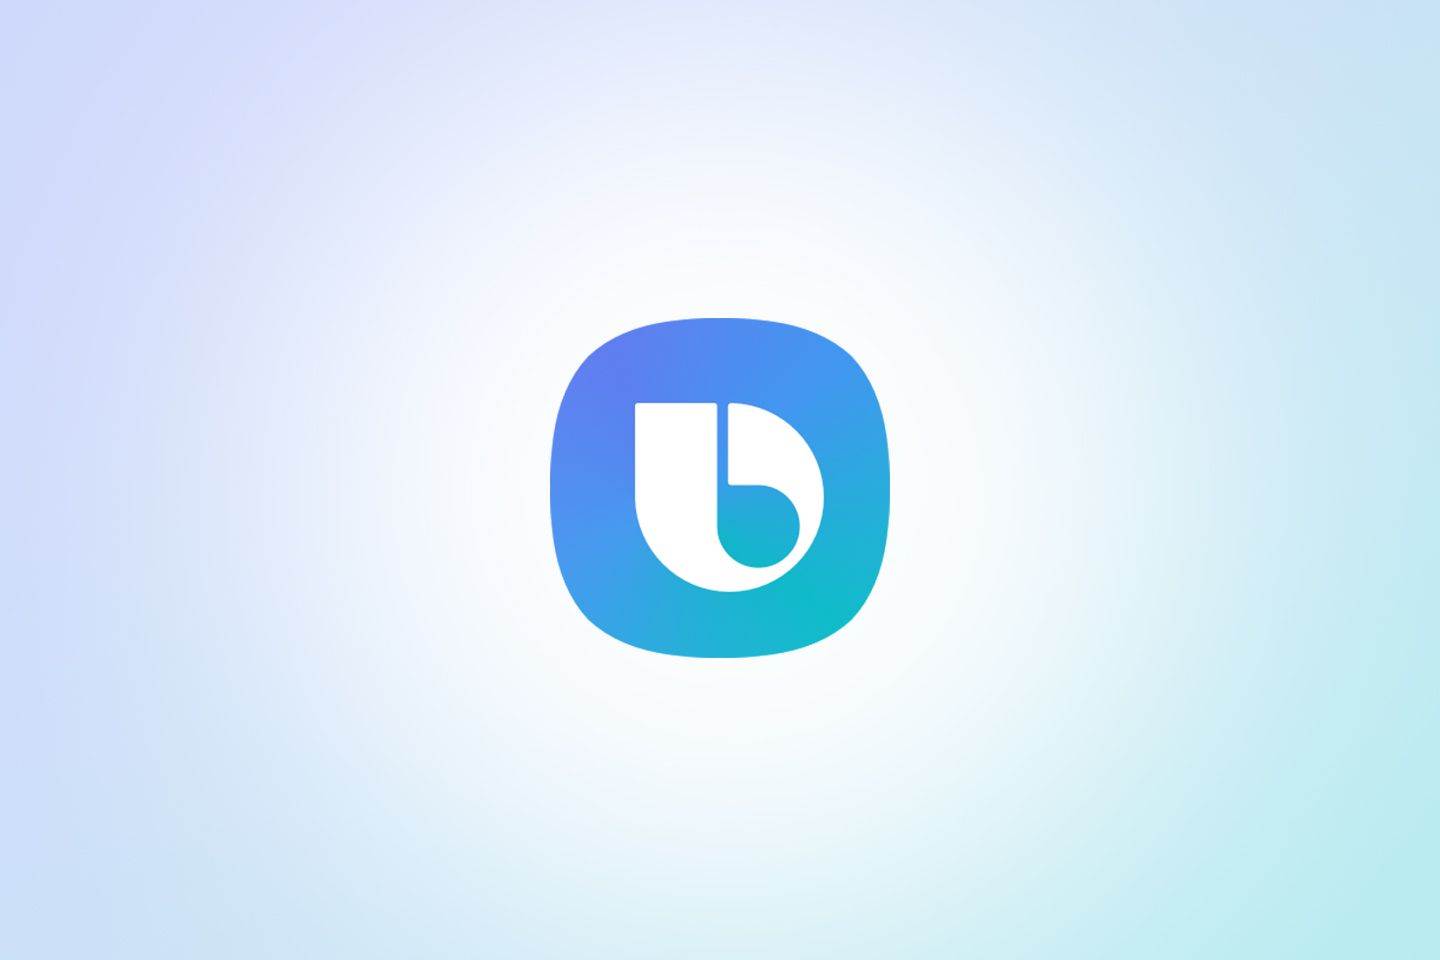  Bixby logo.jpg 